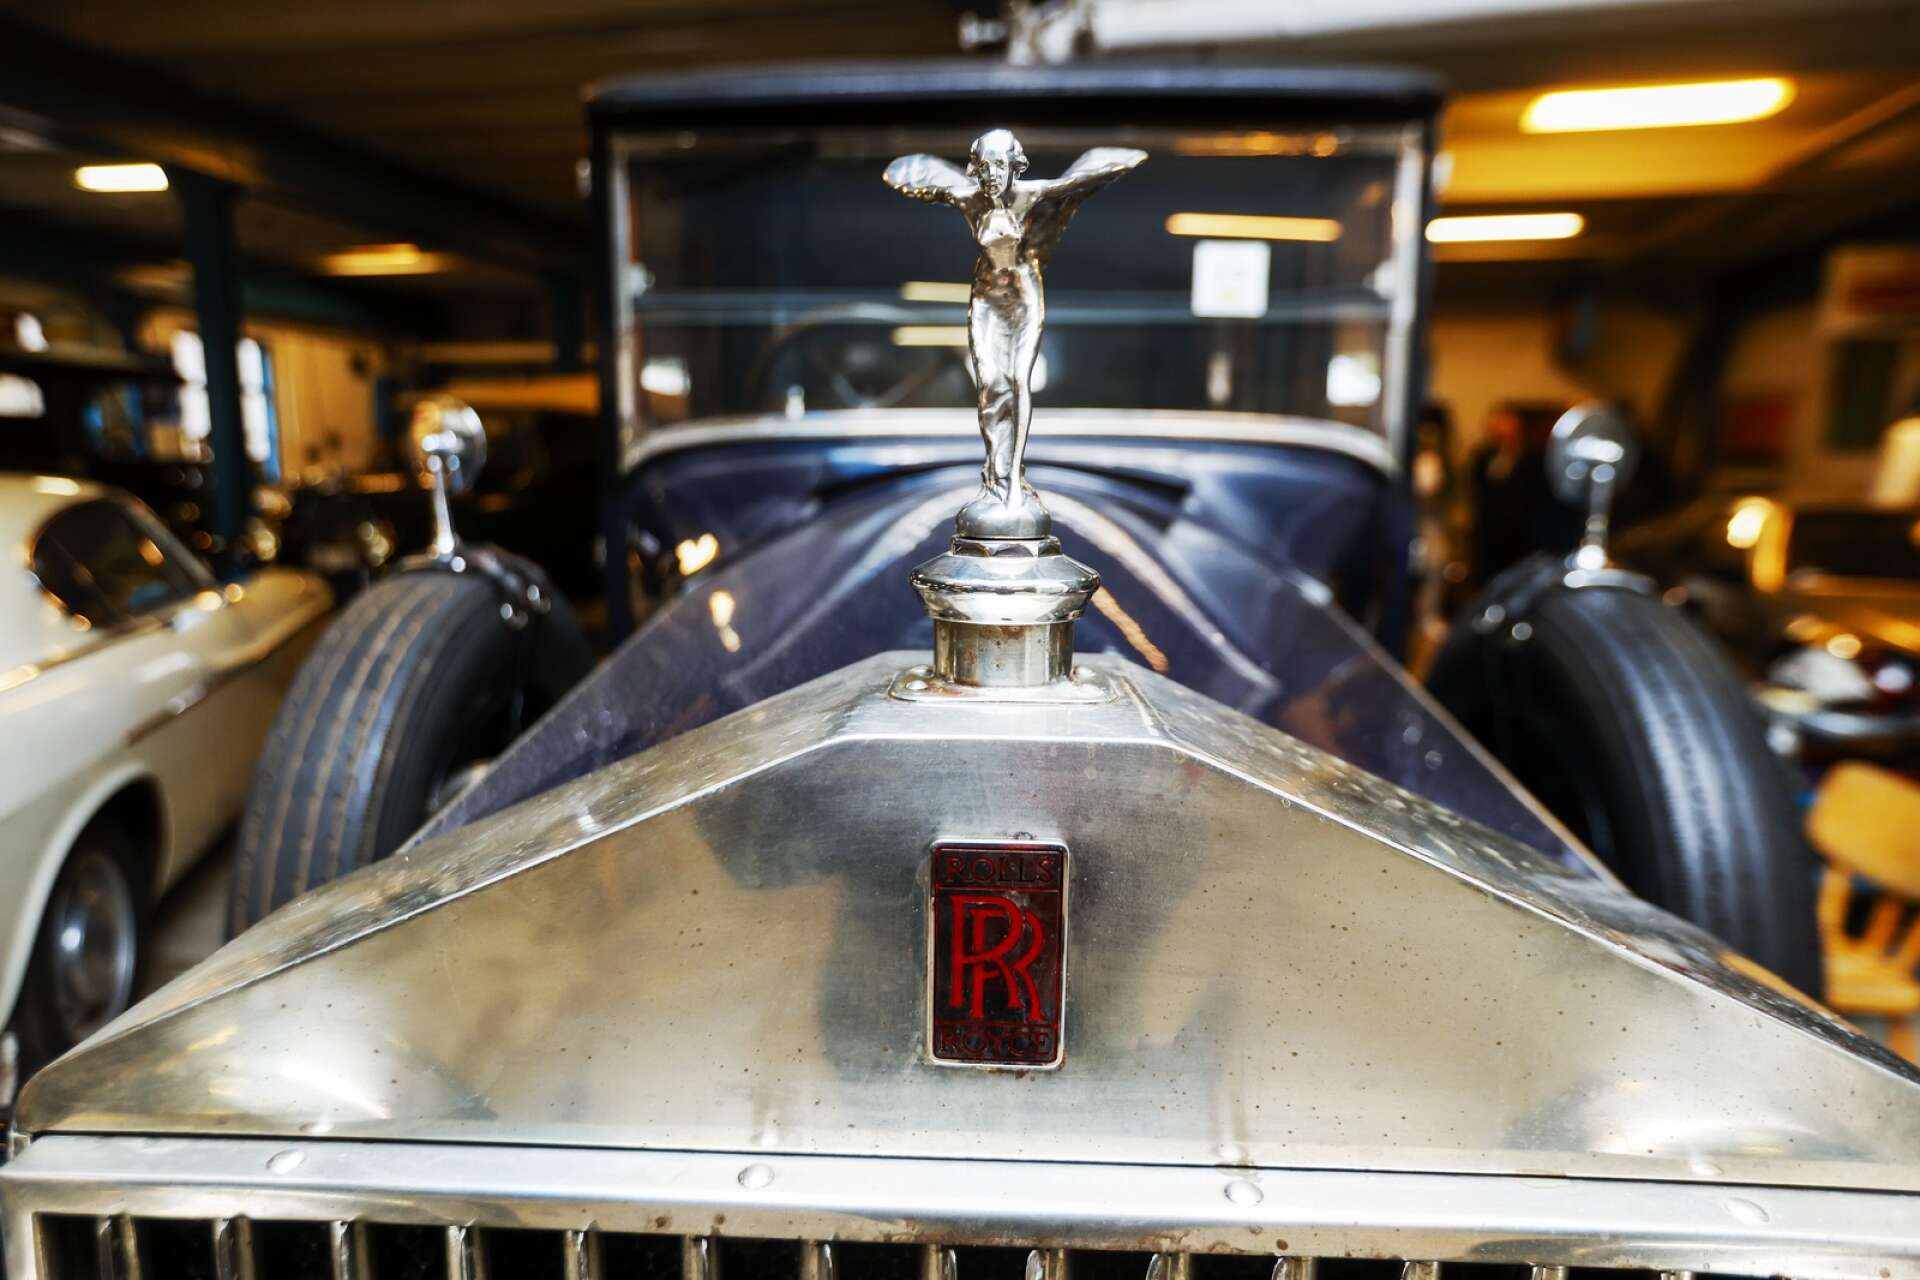 The Spirit of Ecstasy kallas denna klassiska Rolls-Royce-kylarprydnad. 